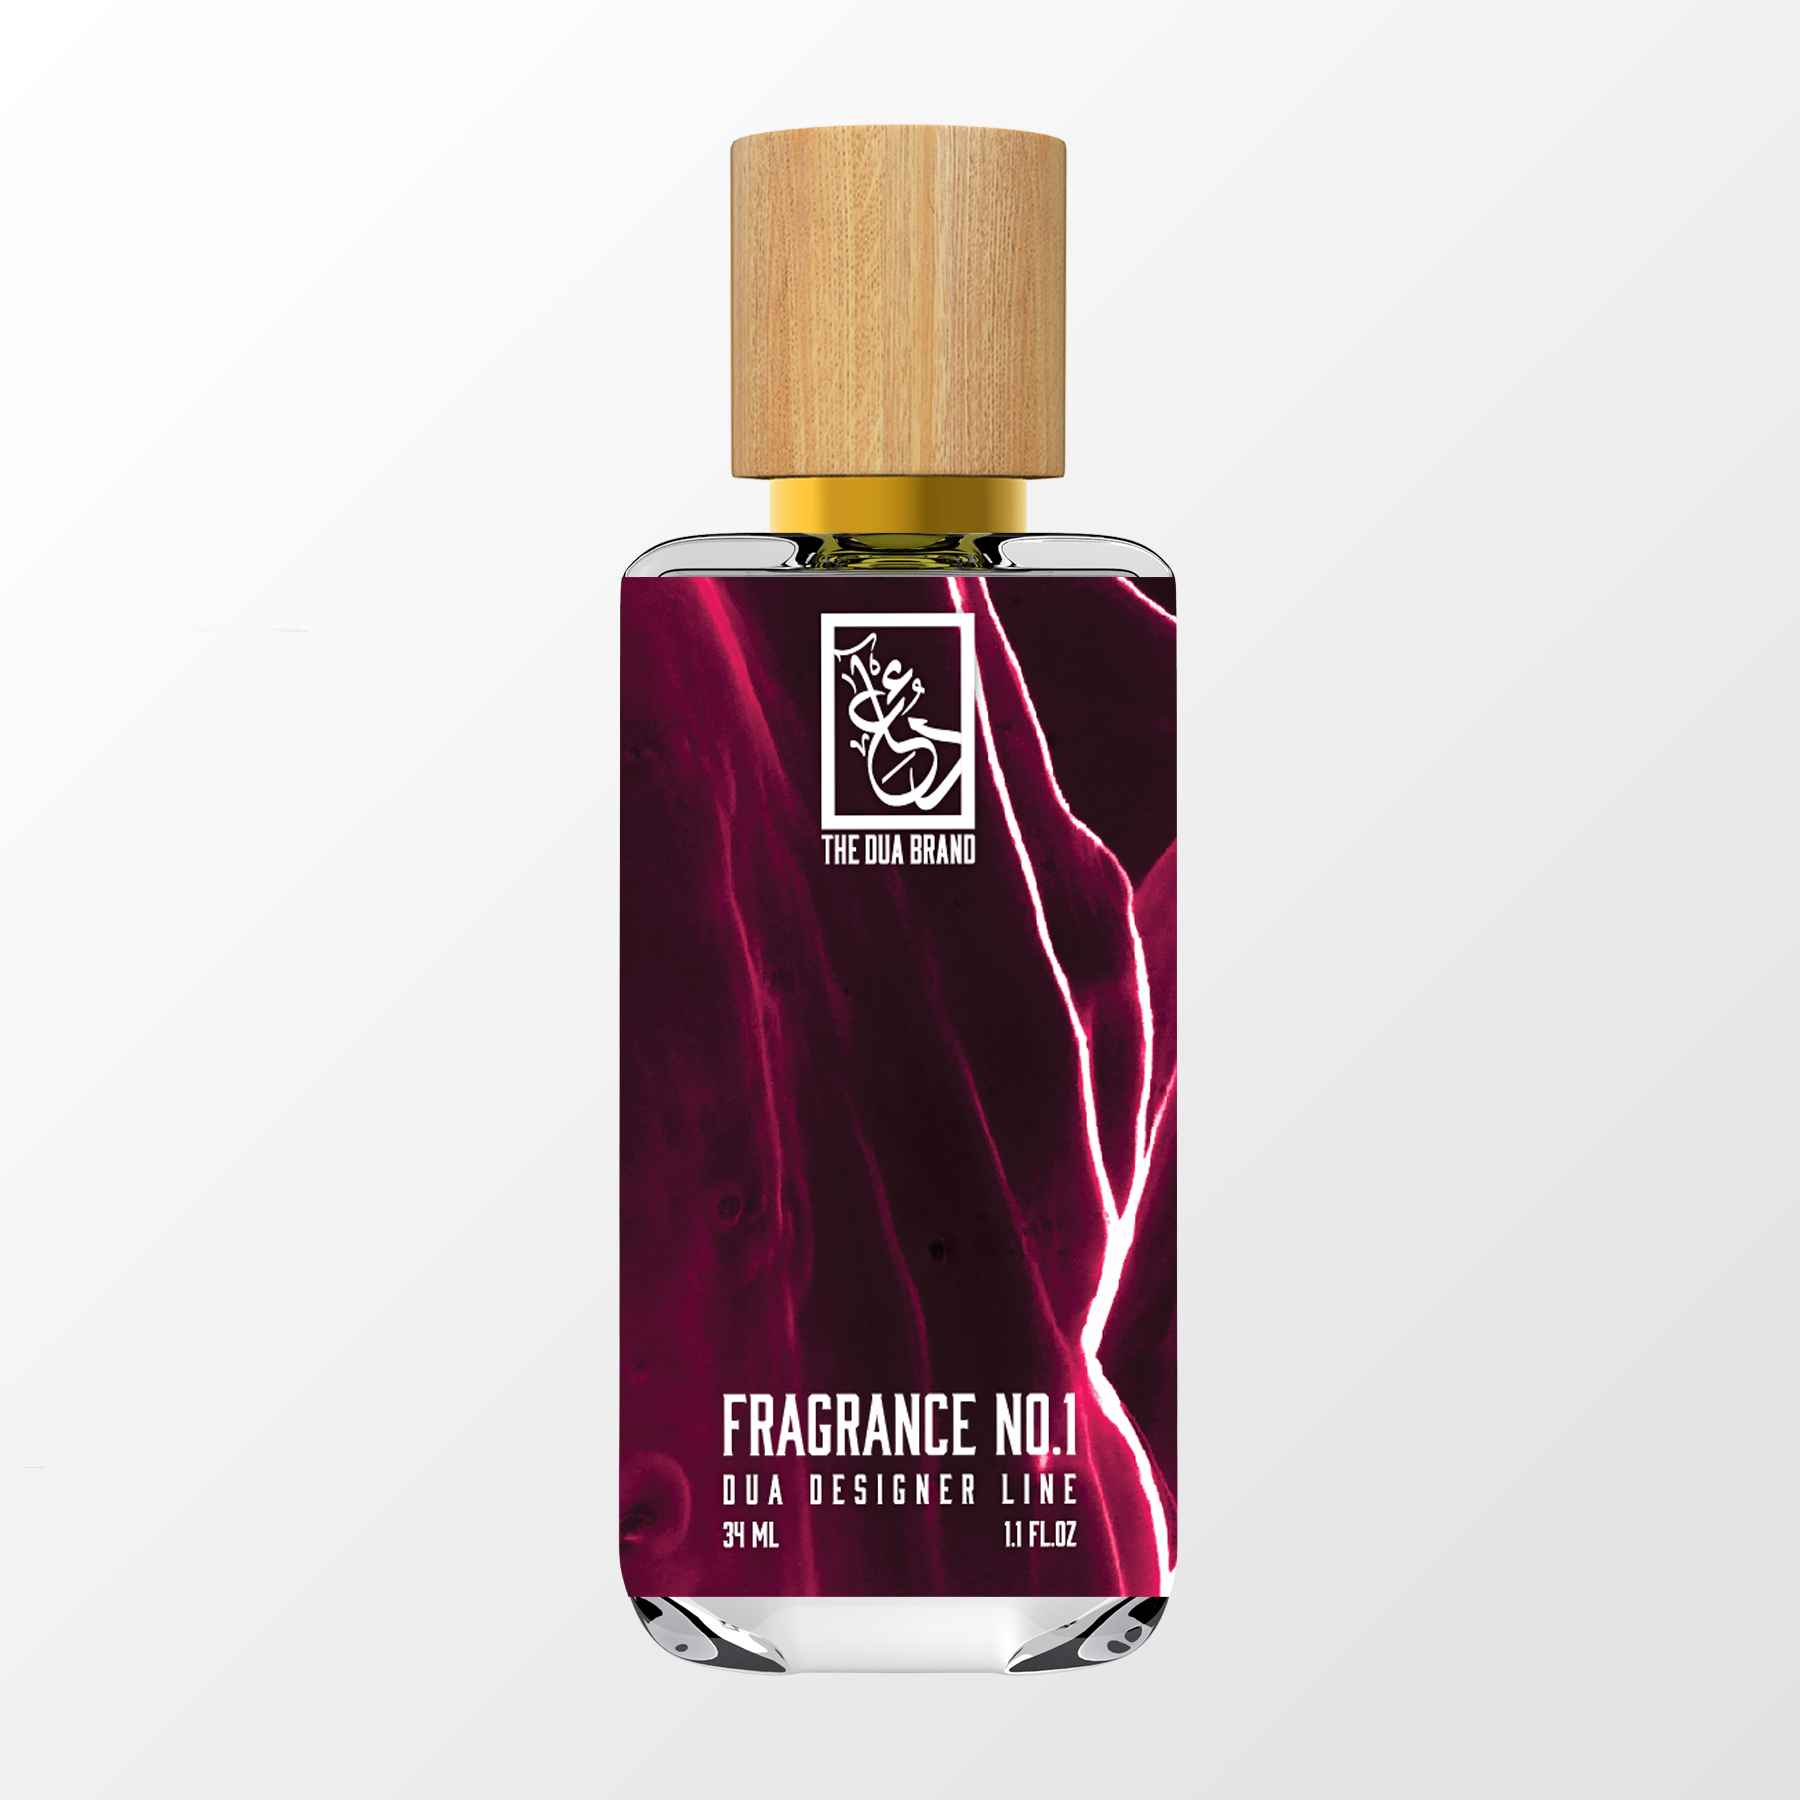 Fragrance No.1